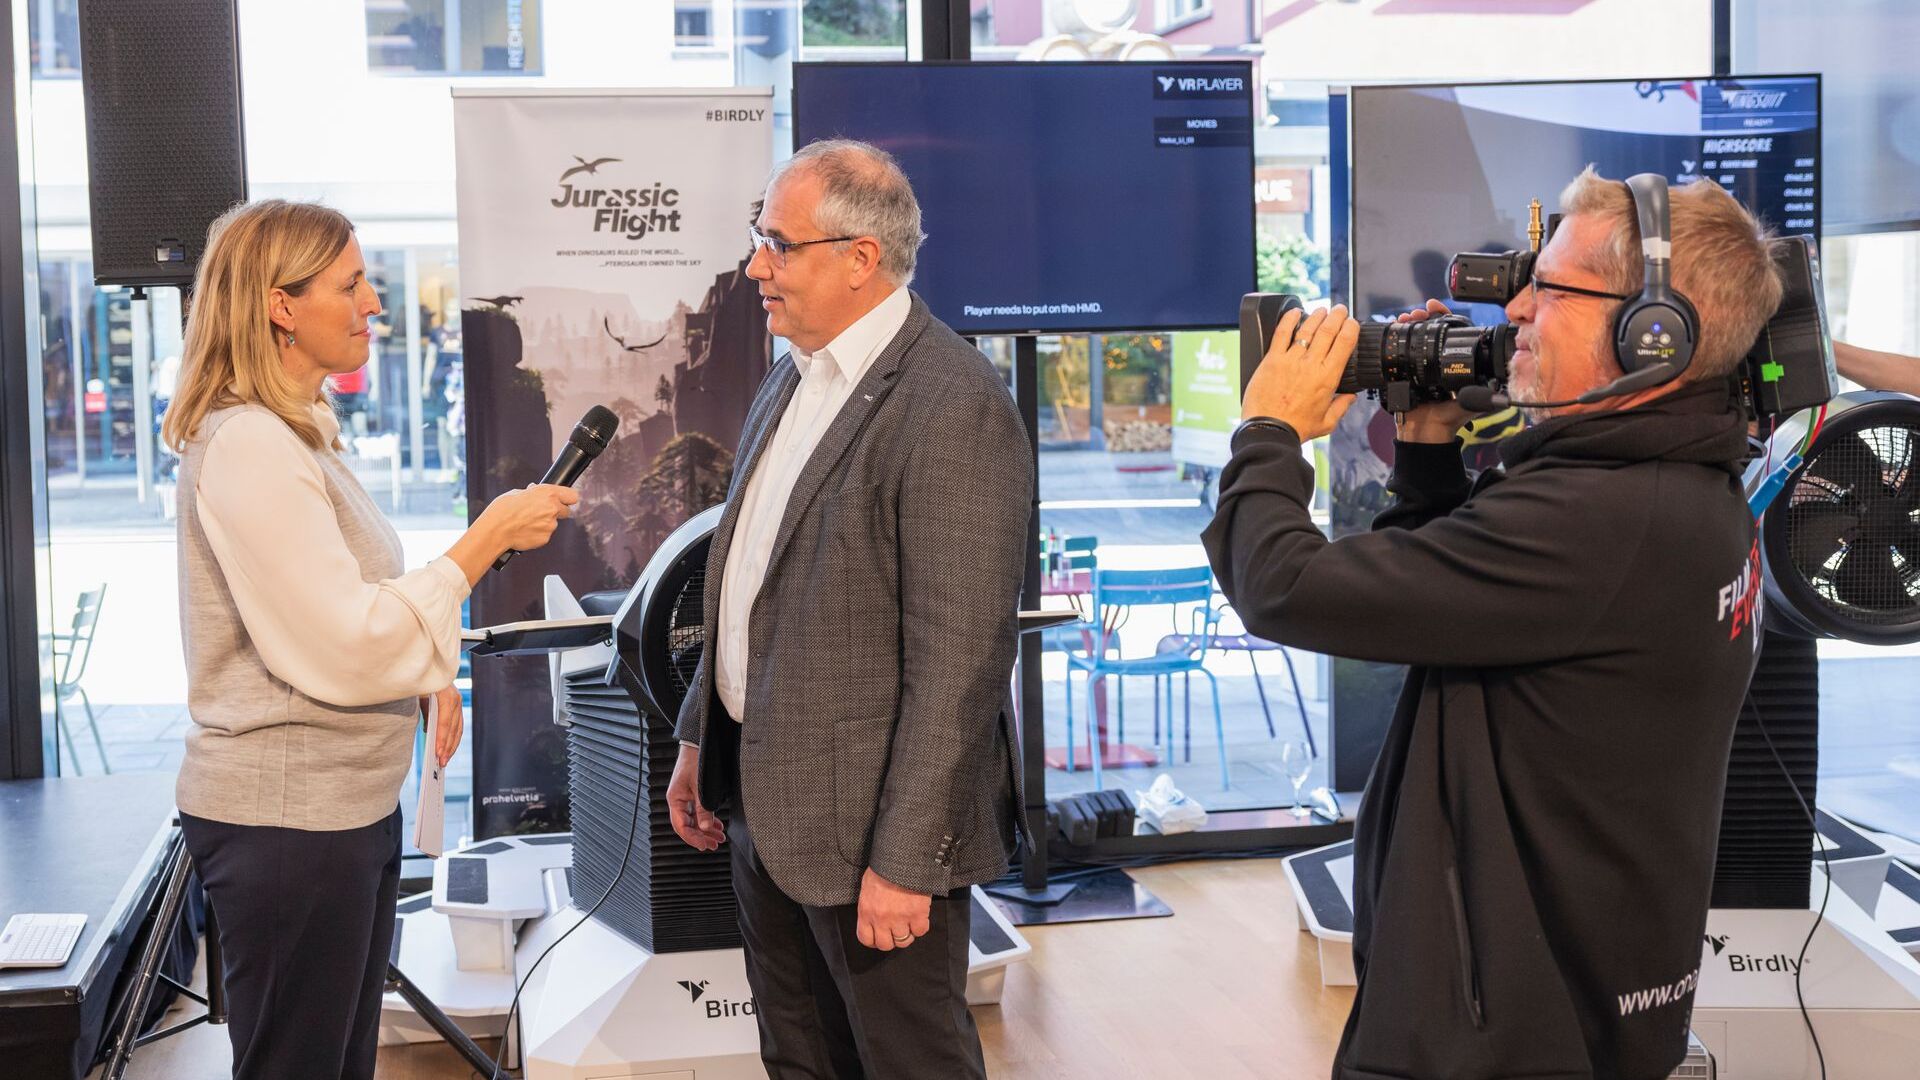 De "Digitaltag Vaduz", verwelkomd door het Kunstmuseum van de hoofdstad van het Vorstendom Liechtenstein op zaterdag 6 november 2021, wekte het enthousiasme van het publiek en de sprekers naar analogie met de "Swiss Digital Day" van de volgende dag 10: interview met Manfred Bischof, burgemeester van de hoofdstad